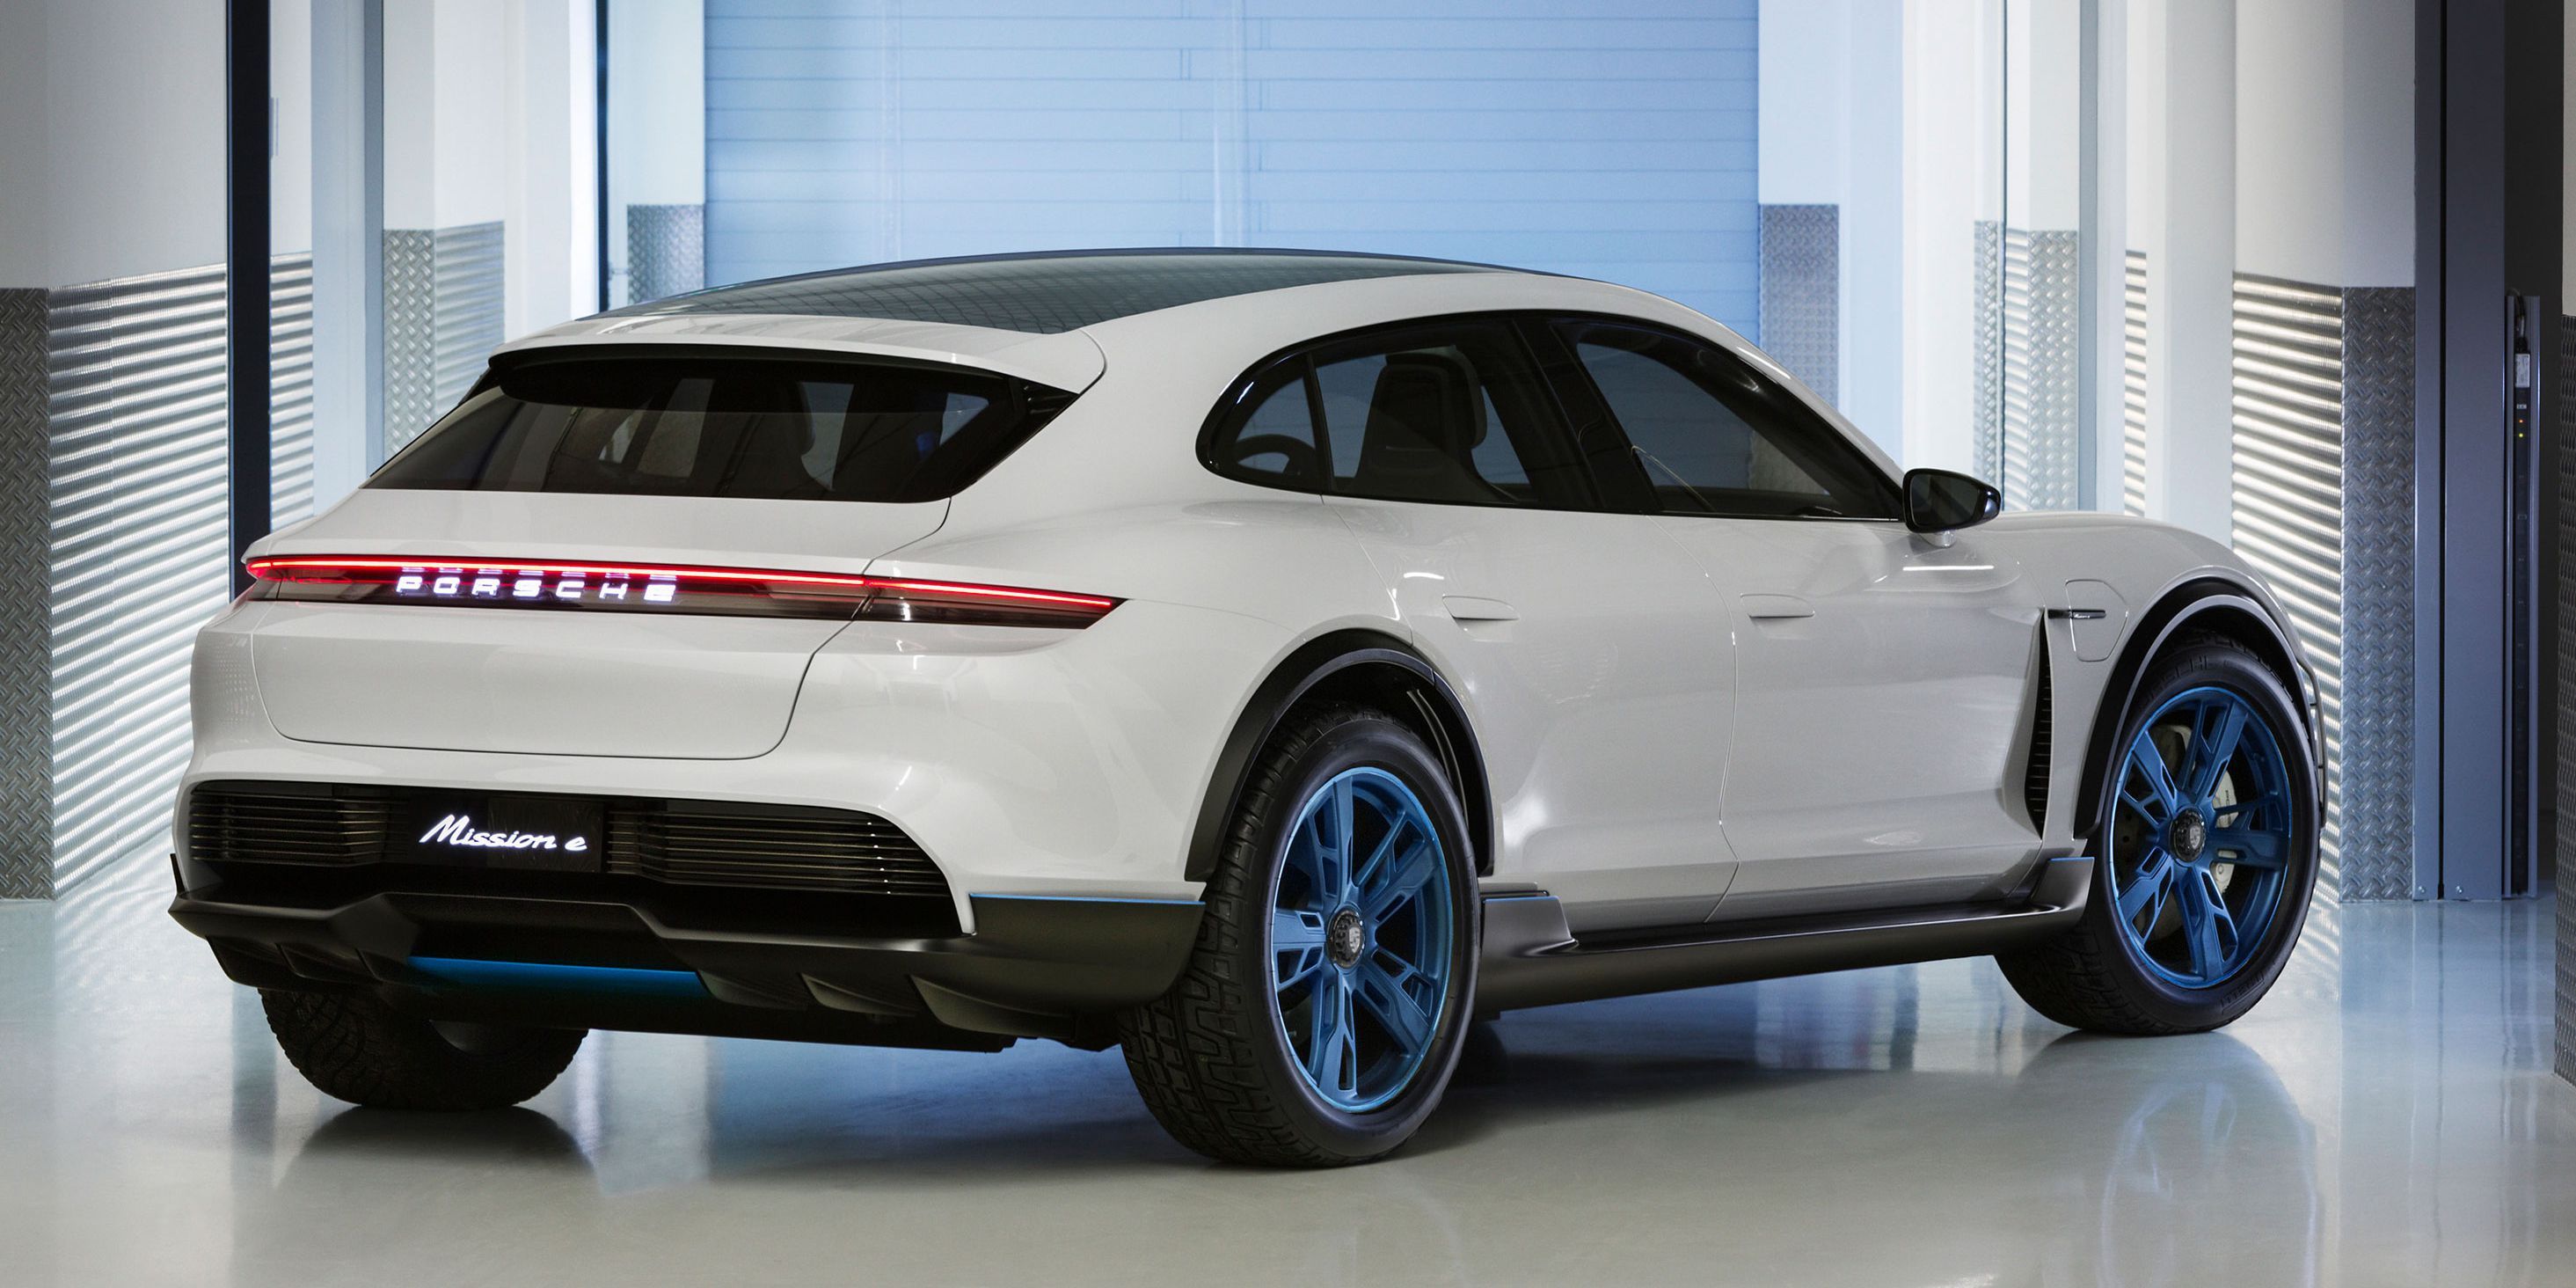 Porsche Mission E set for launch by 2020 - Autoblog